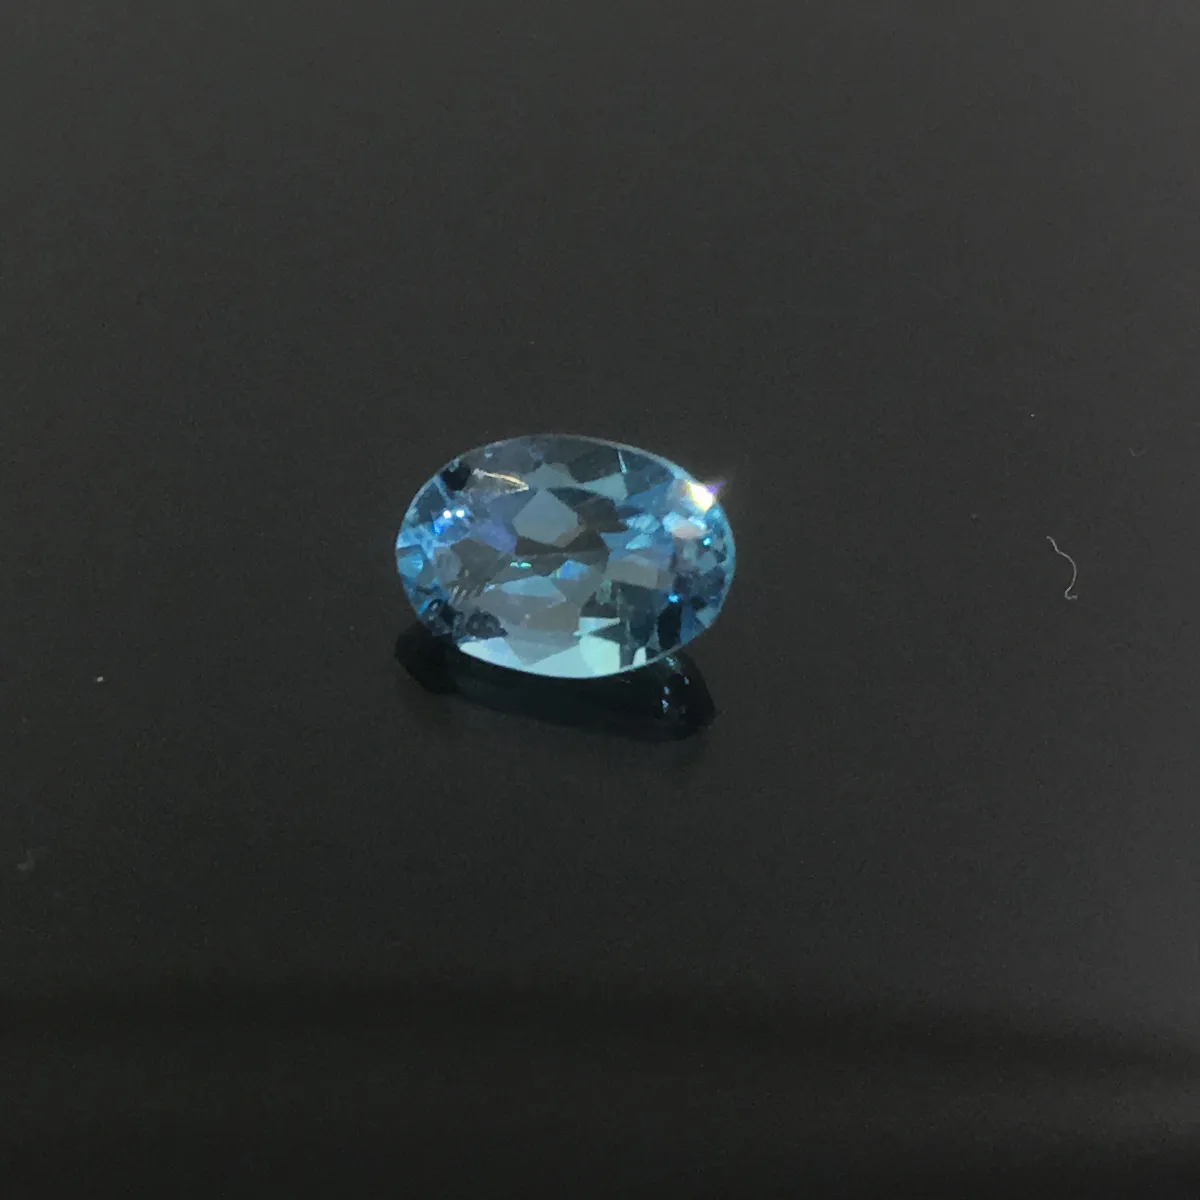 Promoção topa qualidade luz azul topázio natural pedra solta gem para anel brinco ou pingente de 5 mm * 7 mm de peso é de pedra calcária de topázio de 0,6 ct